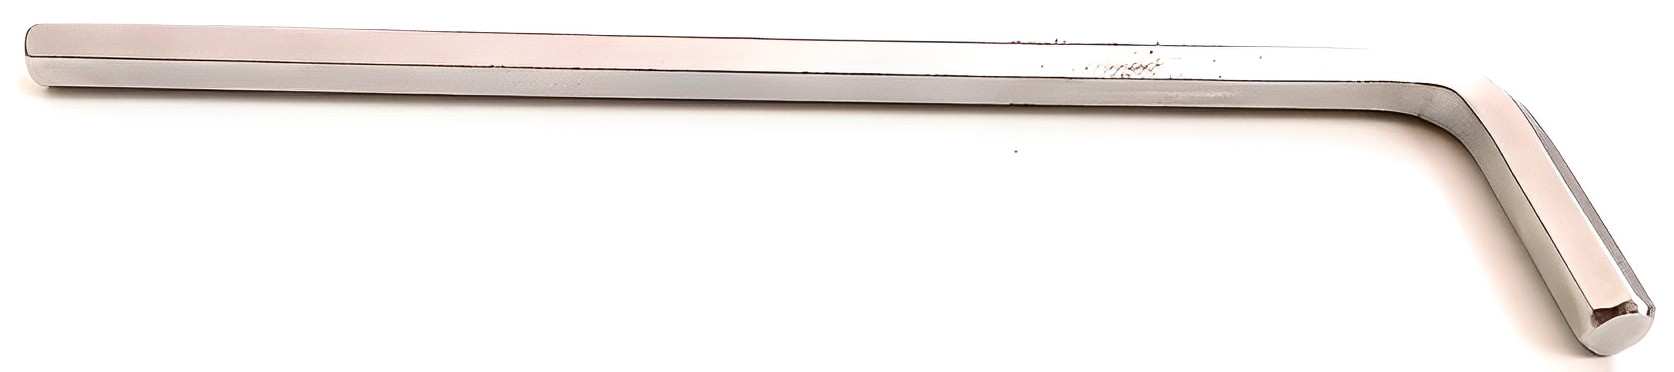 Hình ảnh 1 của mặt hàng Lục giác dài 3mm Stanley STMT94113-8